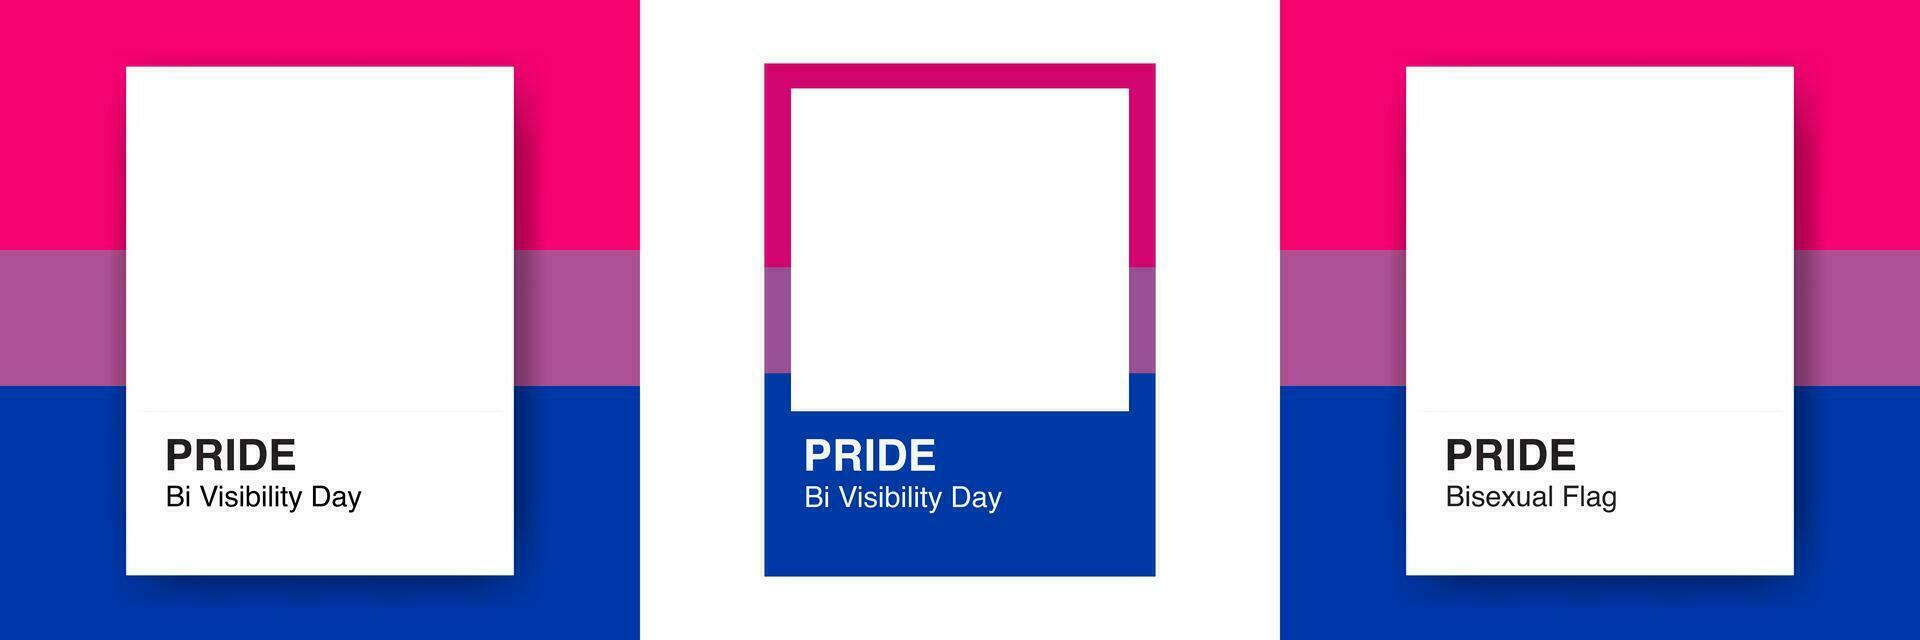 conjunto de bi visibilidad marcos y diseños en instante película concepto en bisexual bandera colores. para foto marcos, diseño fronteras, invitaciones, tarjetas, carteles, huellas dactilares, pegatinas editable vector Arte.